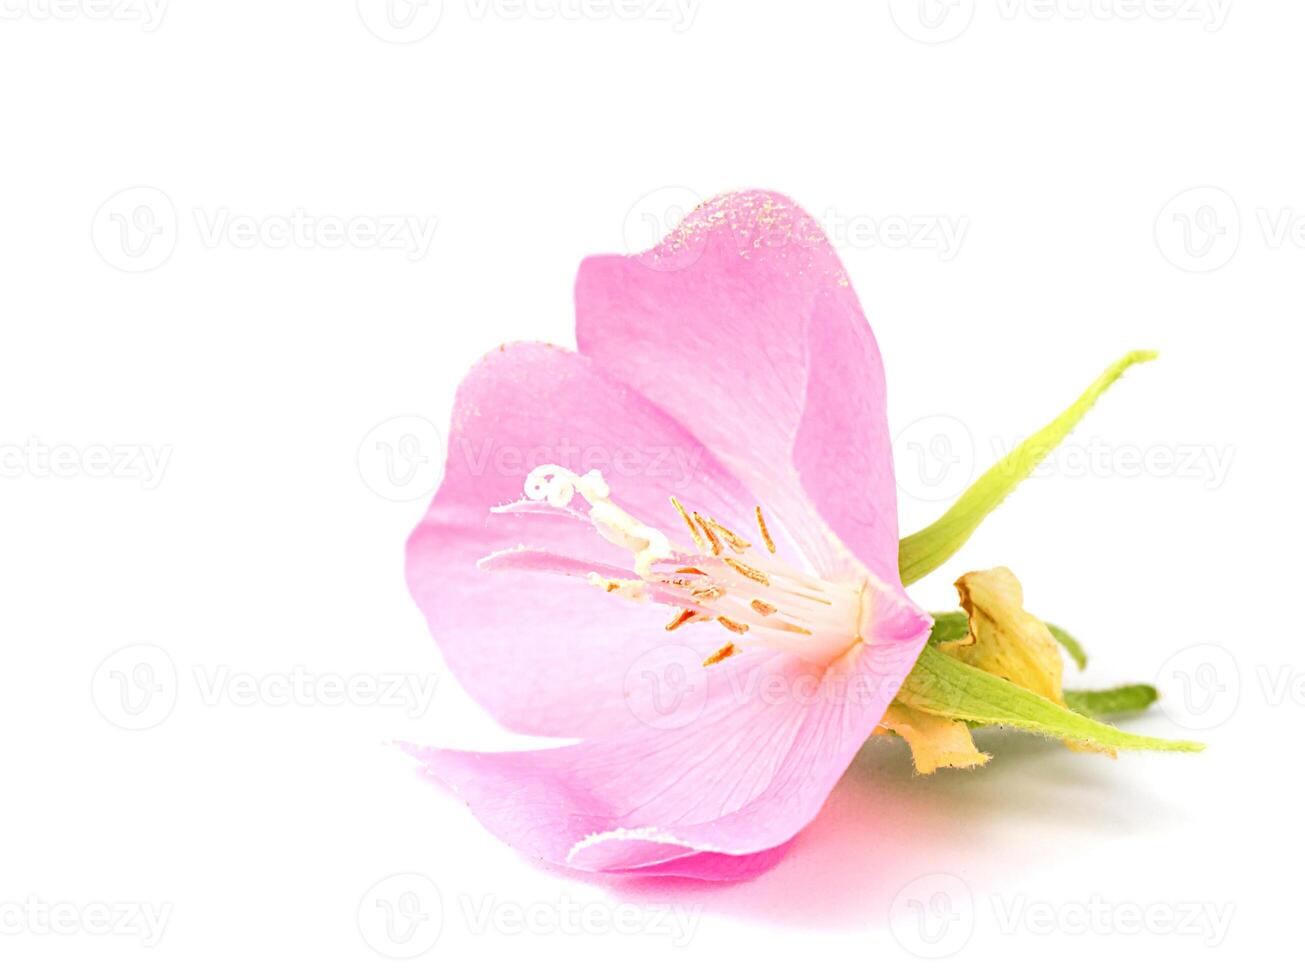 rosa dombeya blomma på vit jord. foto